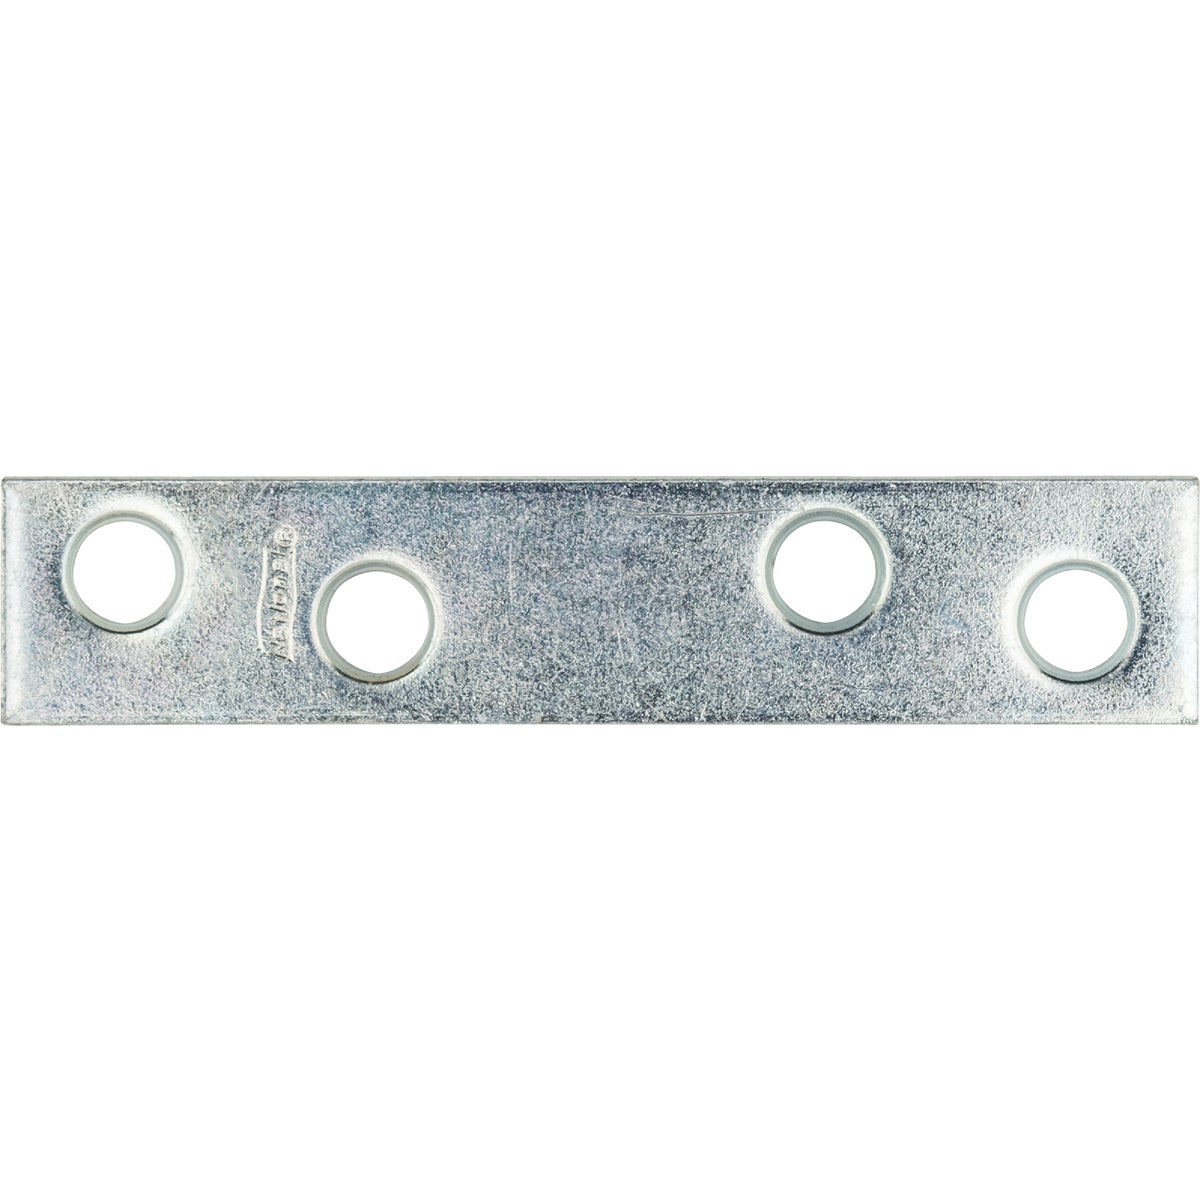 National Catalog 118 3 In. x 5/8 In. Zinc Steel Mending Brace